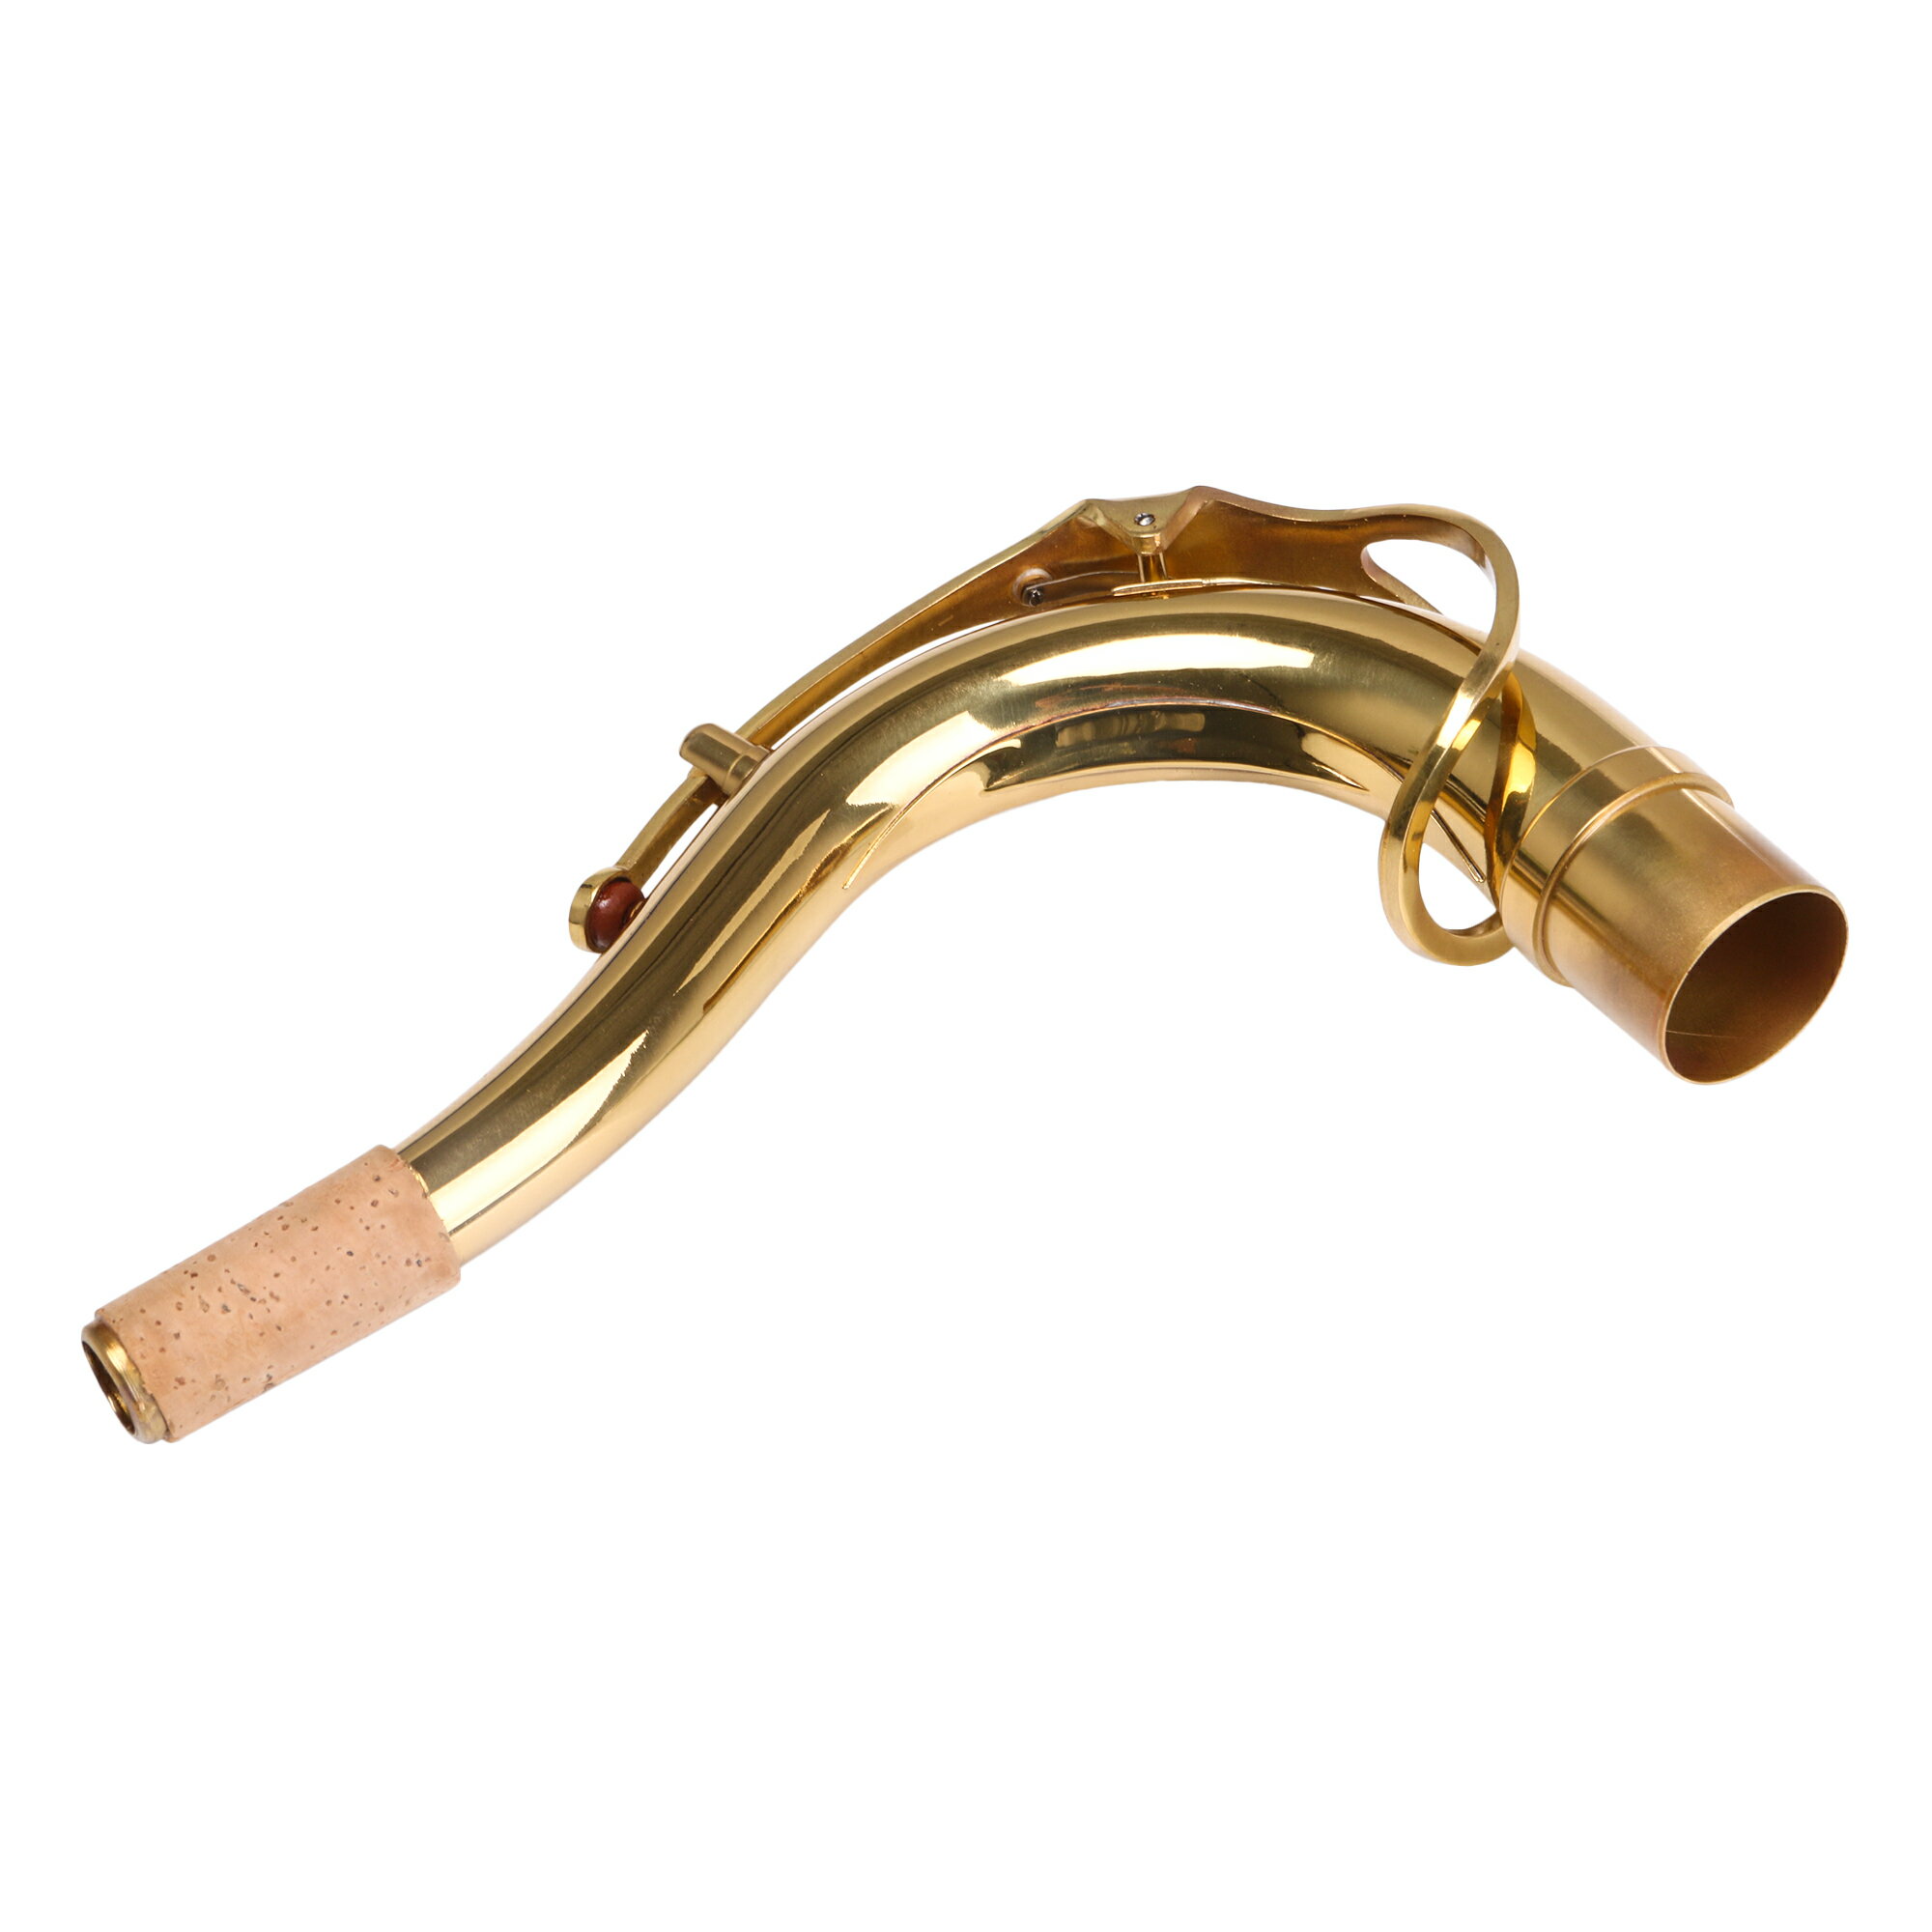 テナーサックス用 エルボーベンドネック 木管楽器パーツ 真鍮製 ゴールド